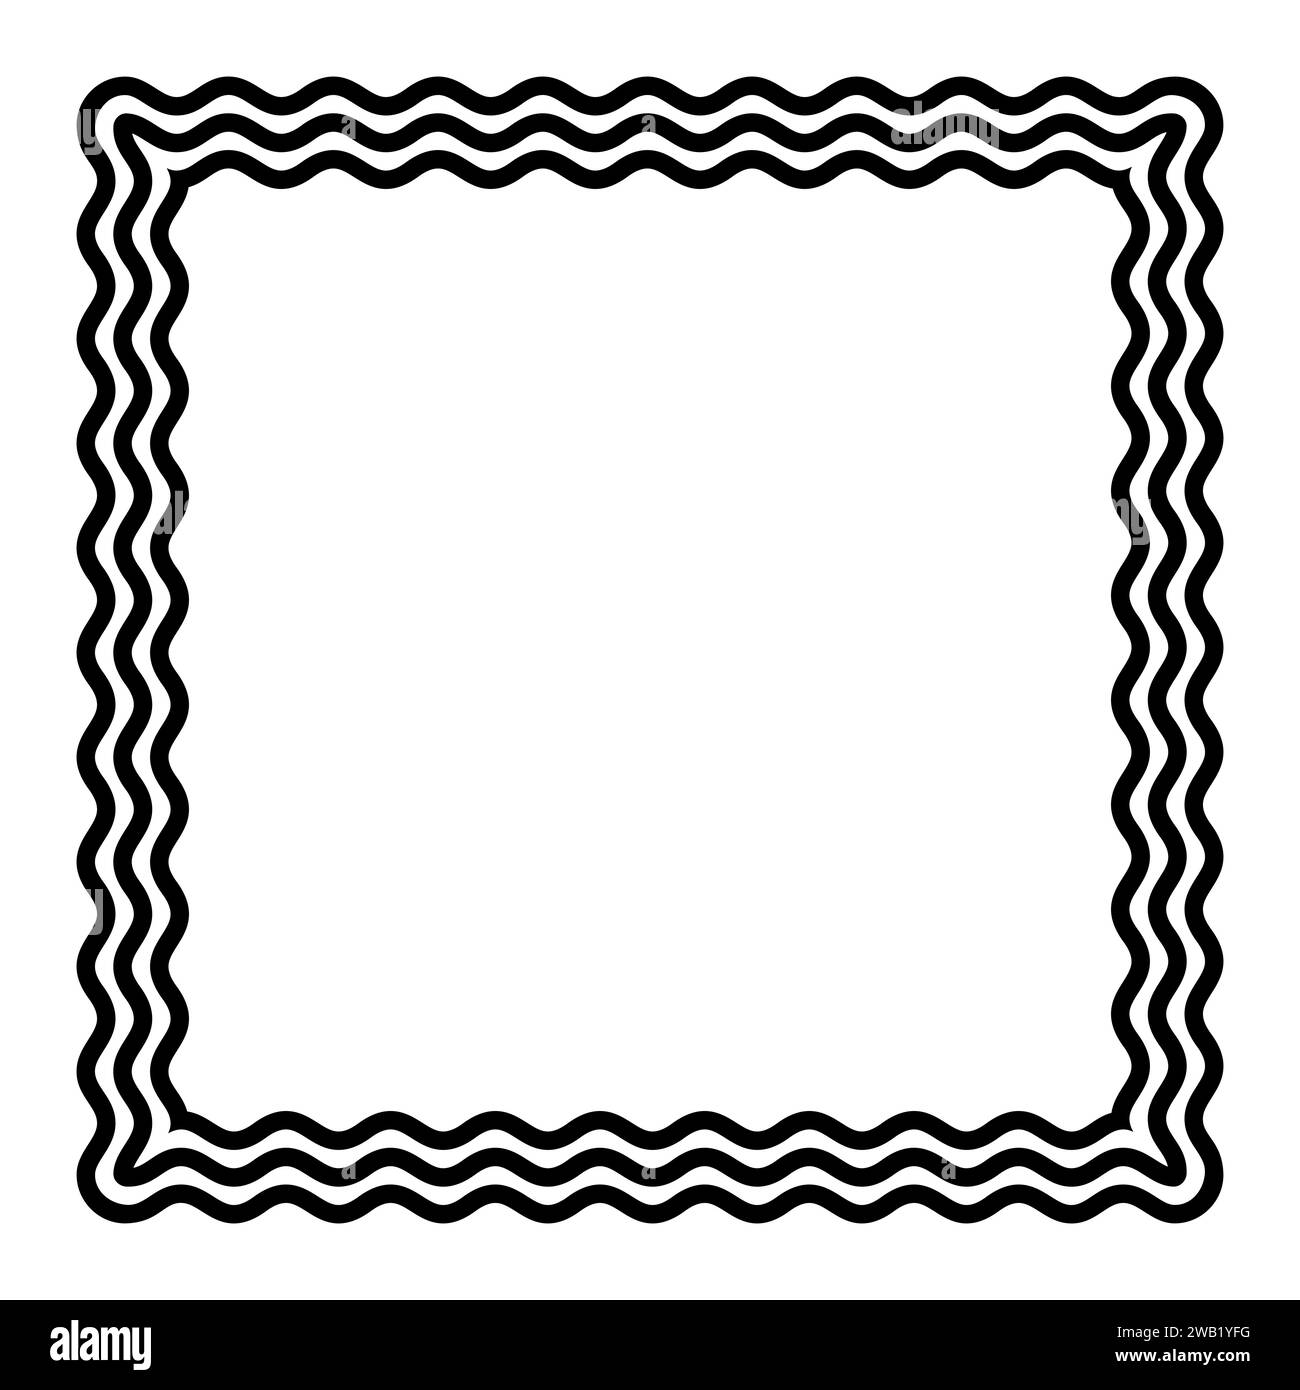 Tre linee ondulate che formano una montatura quadrata nera. Bordo decorativo e simile a un serpente, composto da tre linee a serpentina. Foto Stock